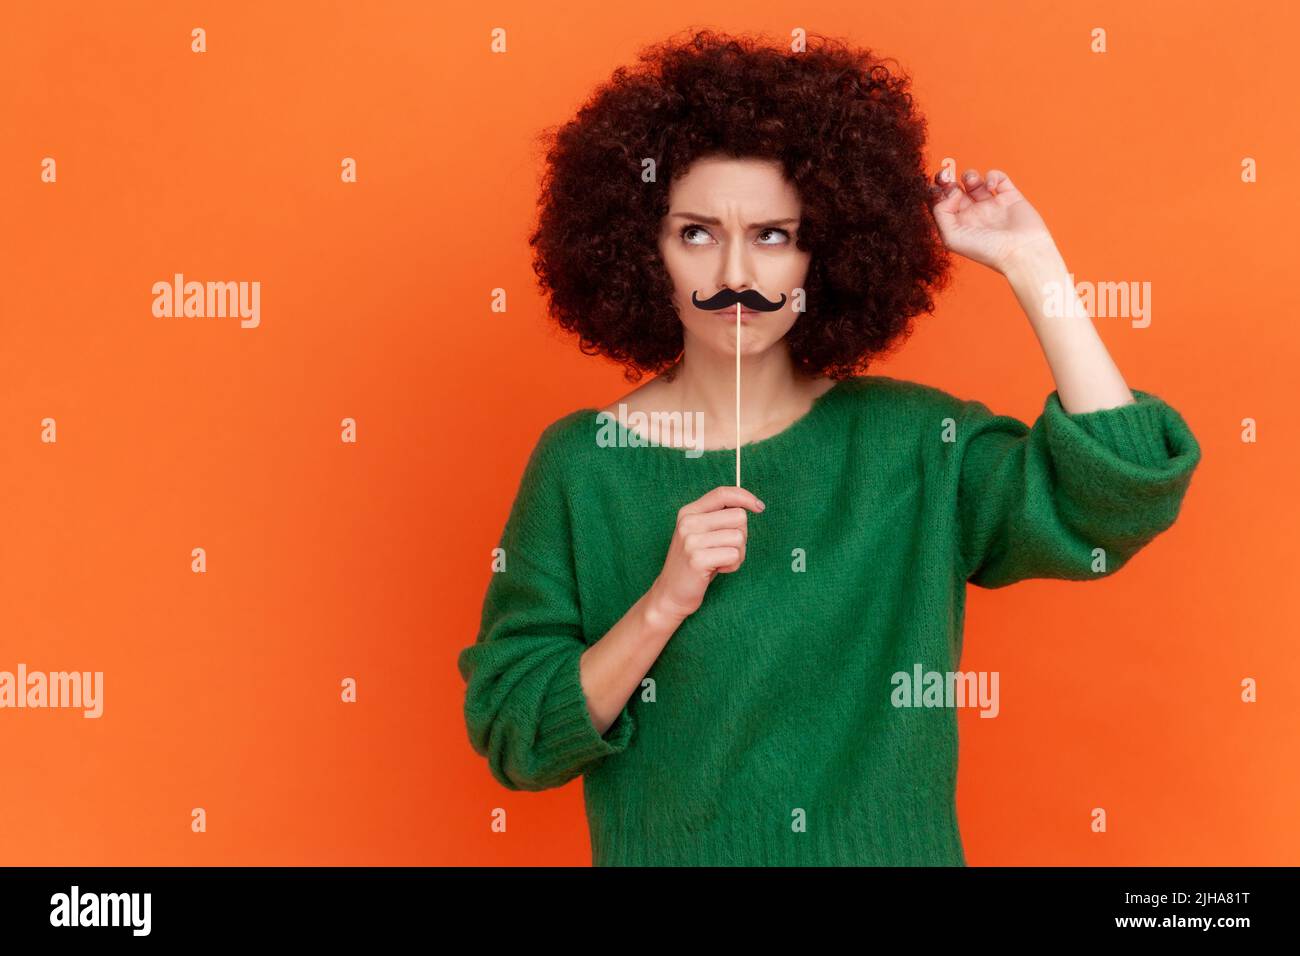 Nachdenkliche Frau mit Afro-Frisur trägt einen grünen Pullover im lässigen Stil mit festlicher Stimmung, steht mit Schnurrbart und ist tief in Gedanken. Innenaufnahme des Studios isoliert auf orangefarbenem Hintergrund. Stockfoto